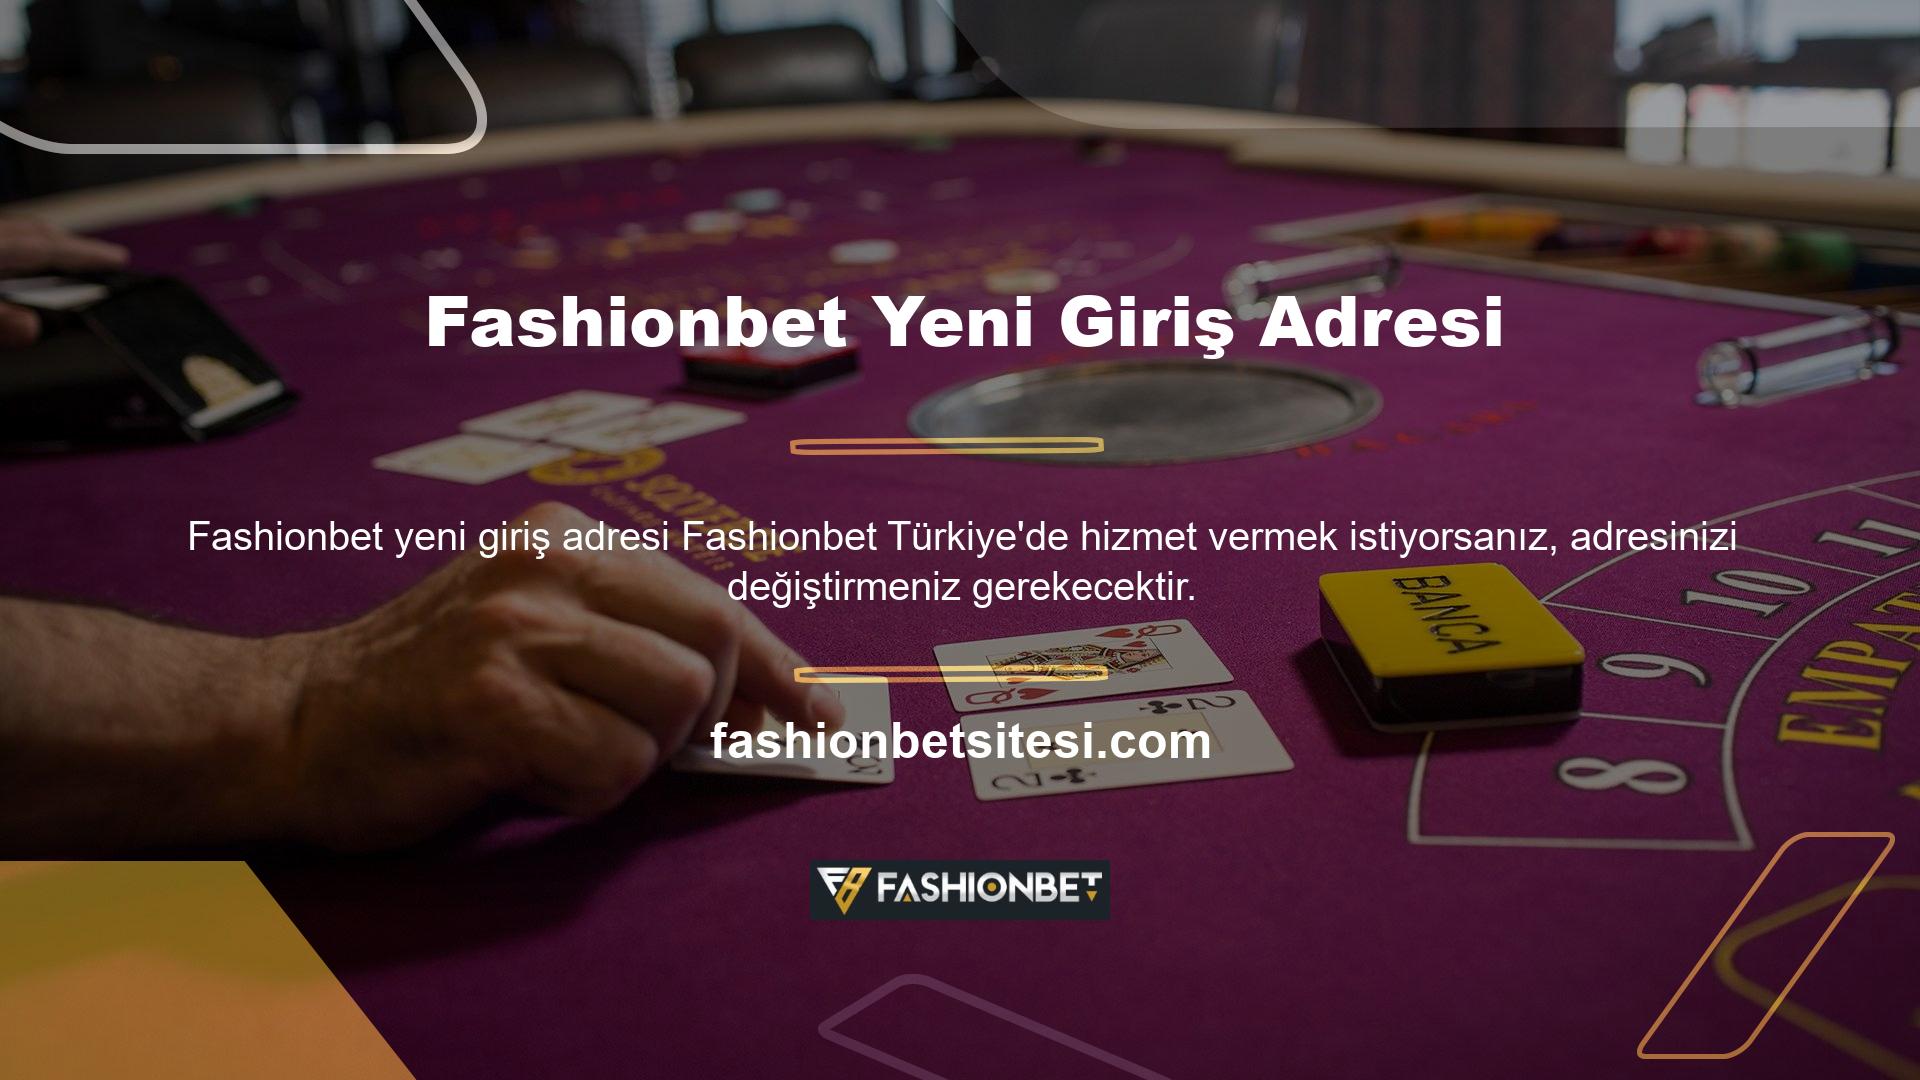 Fashionbet web sitesi Türk casino alanlarında öne çıkmak istiyorsa adresini değiştirmelidir